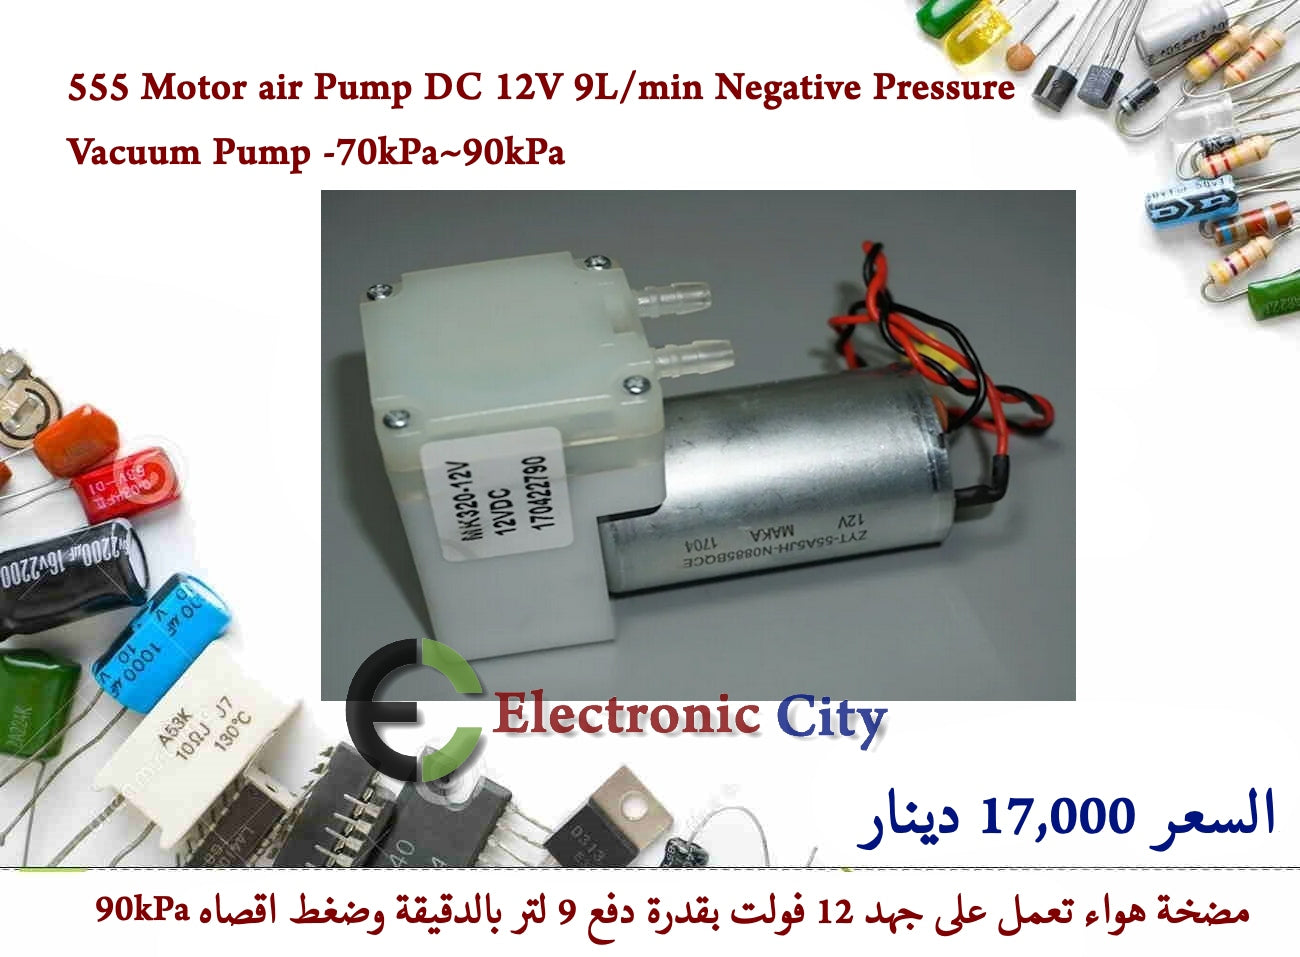 555 Motor air Pump DC 12V 9L min Negative Pressure Vacuum Pump -70kPa~90kPa 2  12248